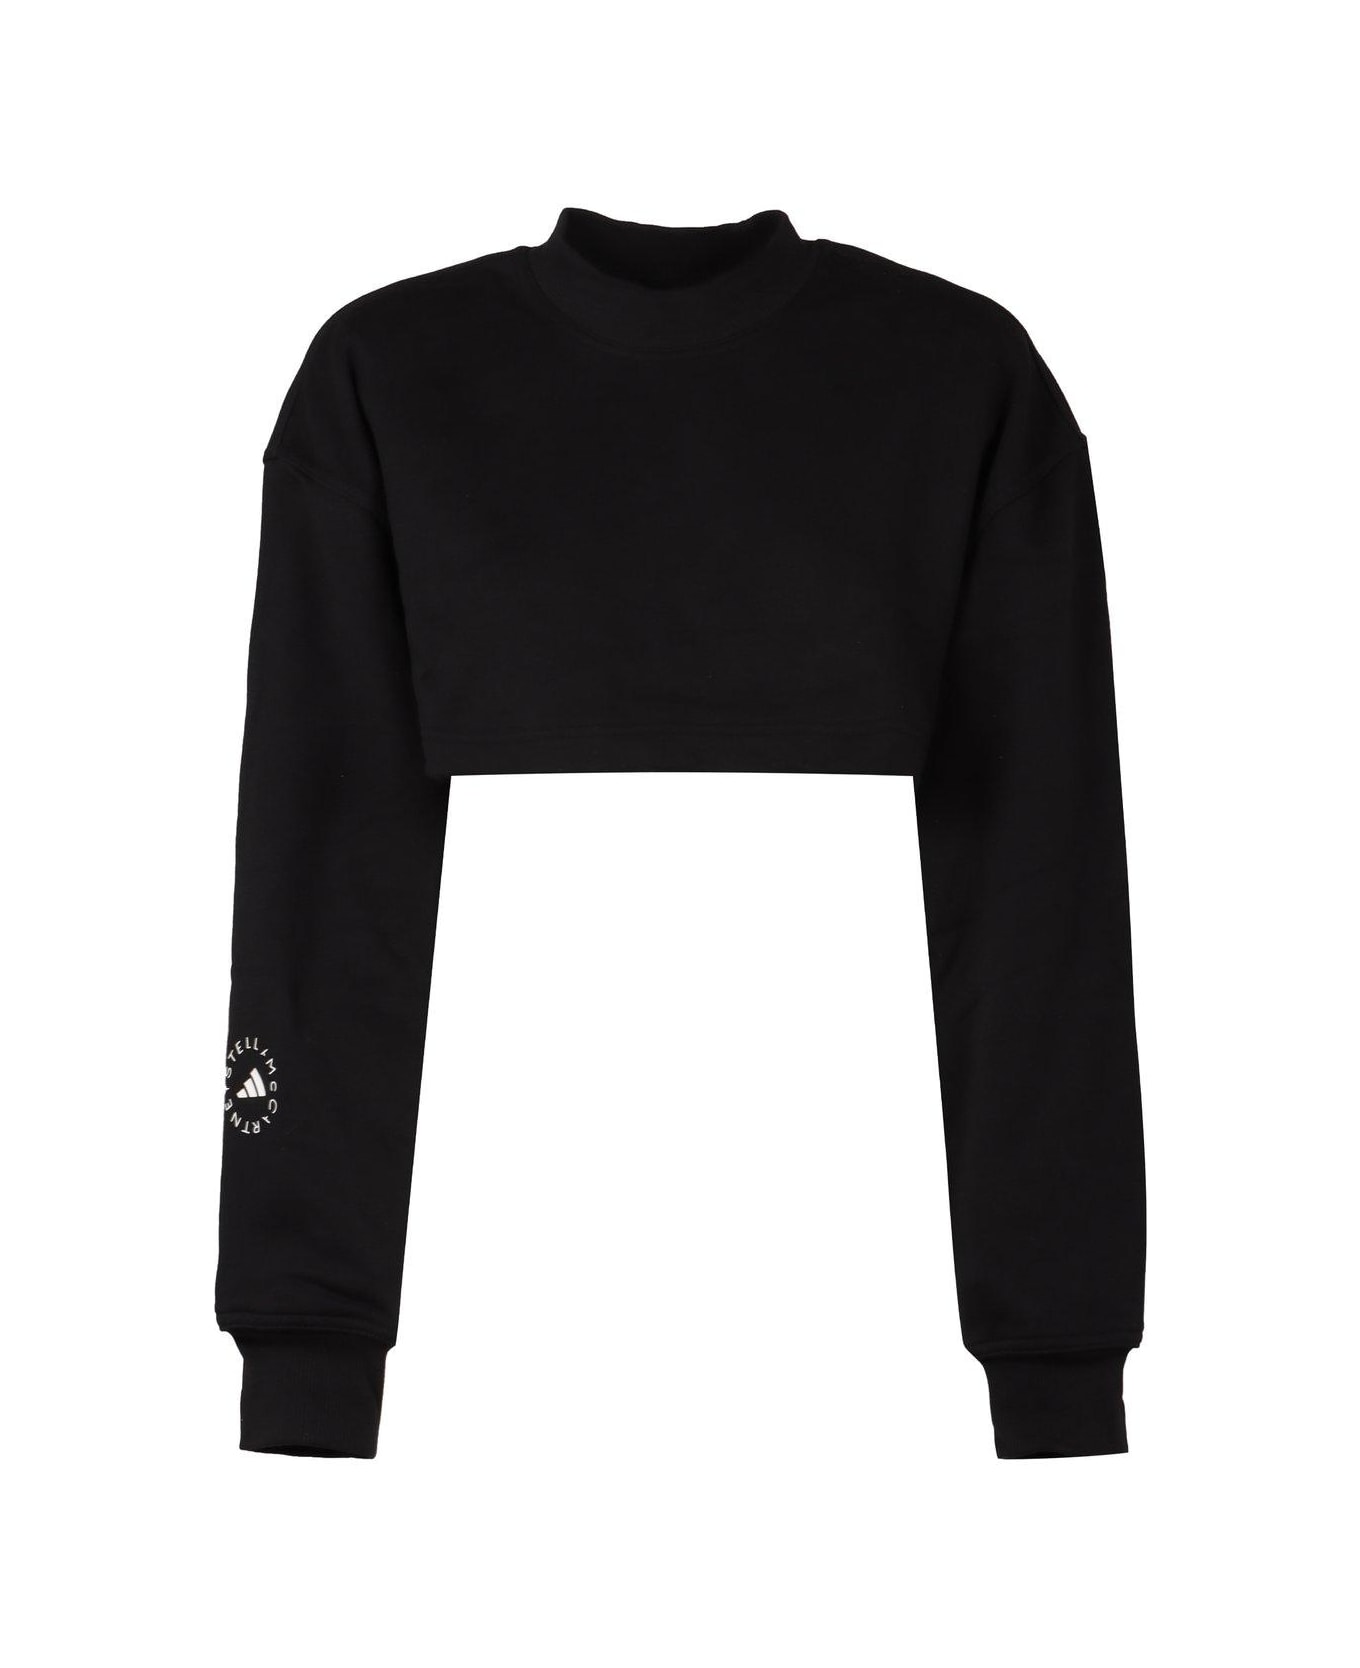 Adidas by Stella McCartney Crewneck Cropped Sweatshirt - Black